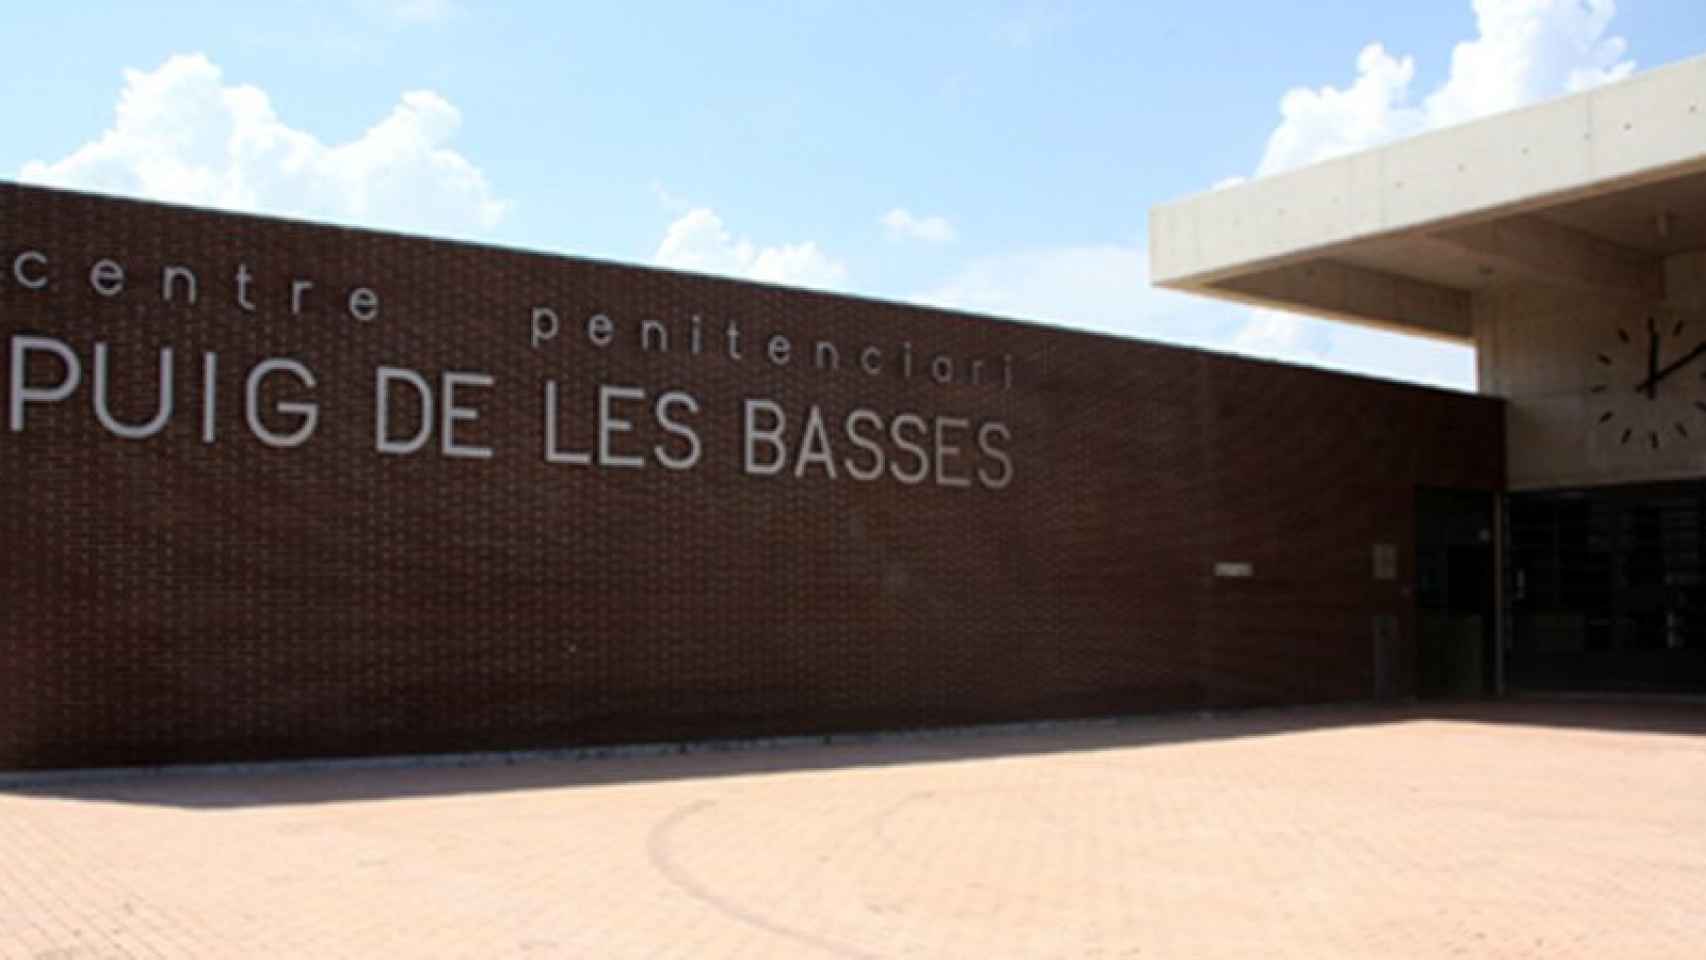 Centro penitenciario Puig de les Basses, en Girona.